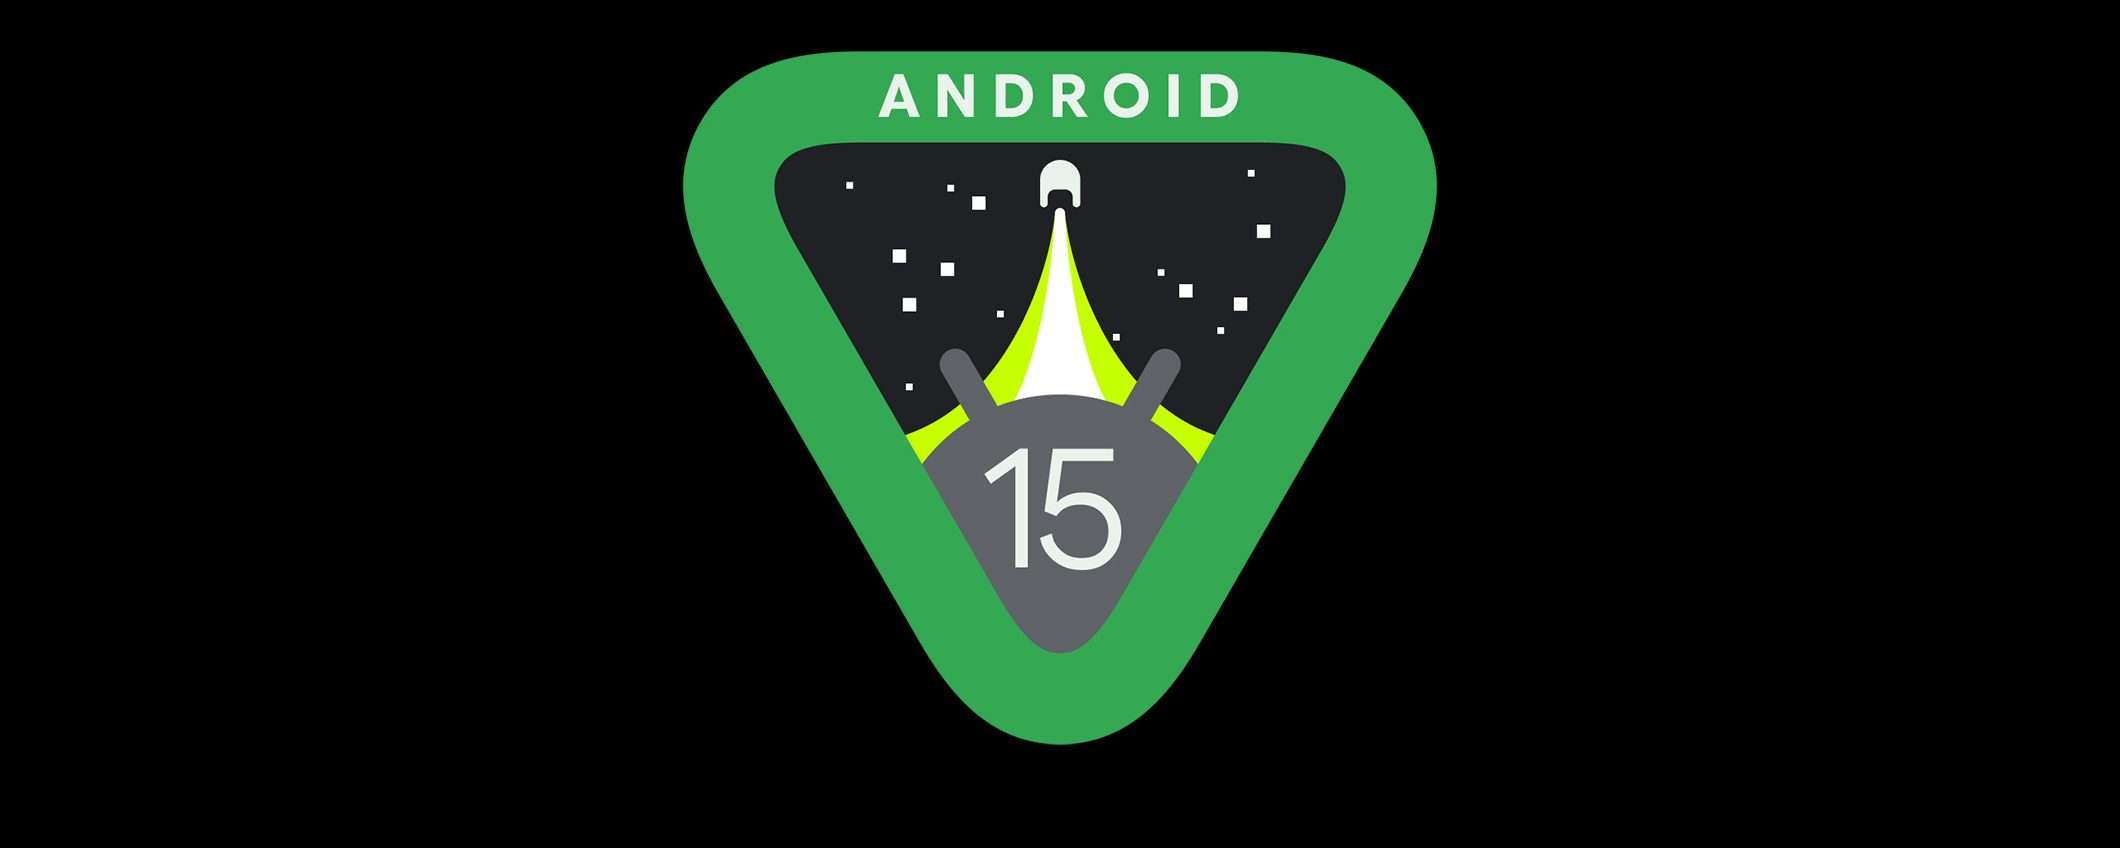 Android 15: connettività satellitare per la messaggistica